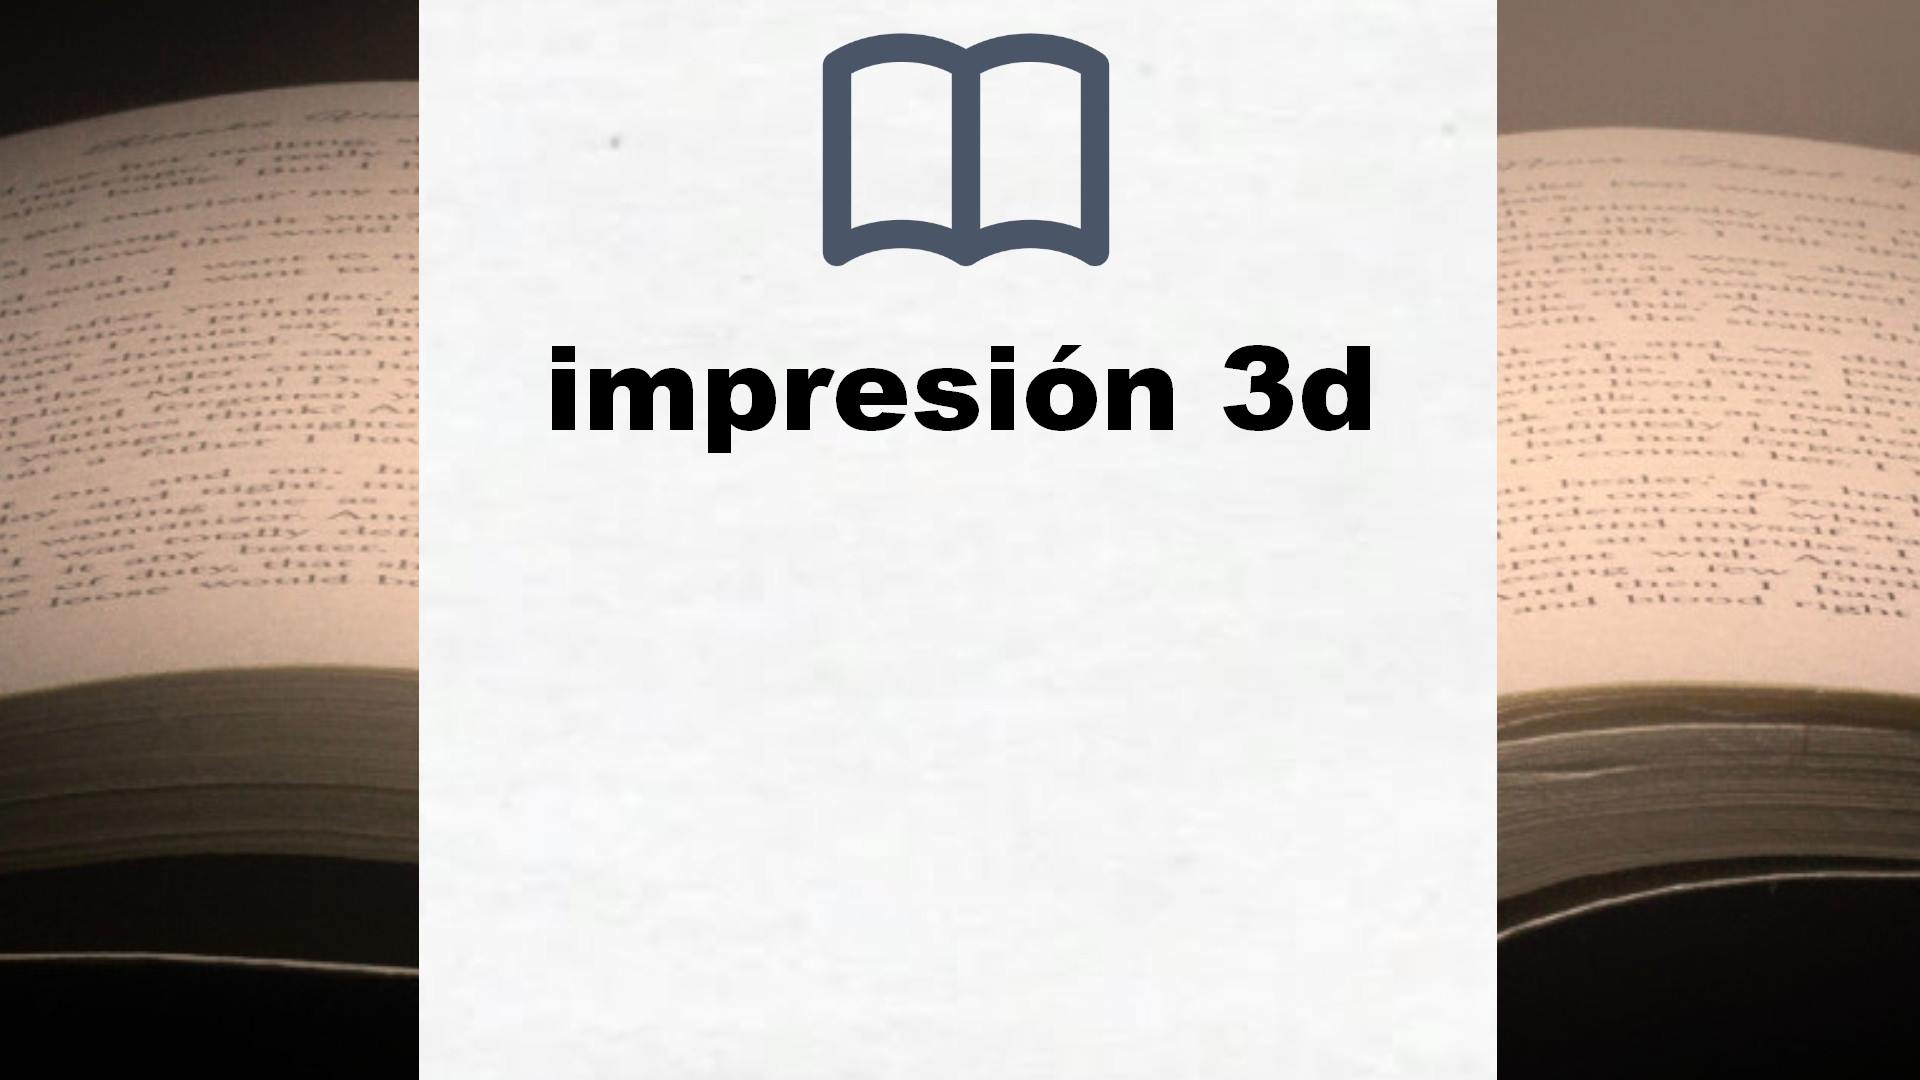 Libros sobre impresión 3d